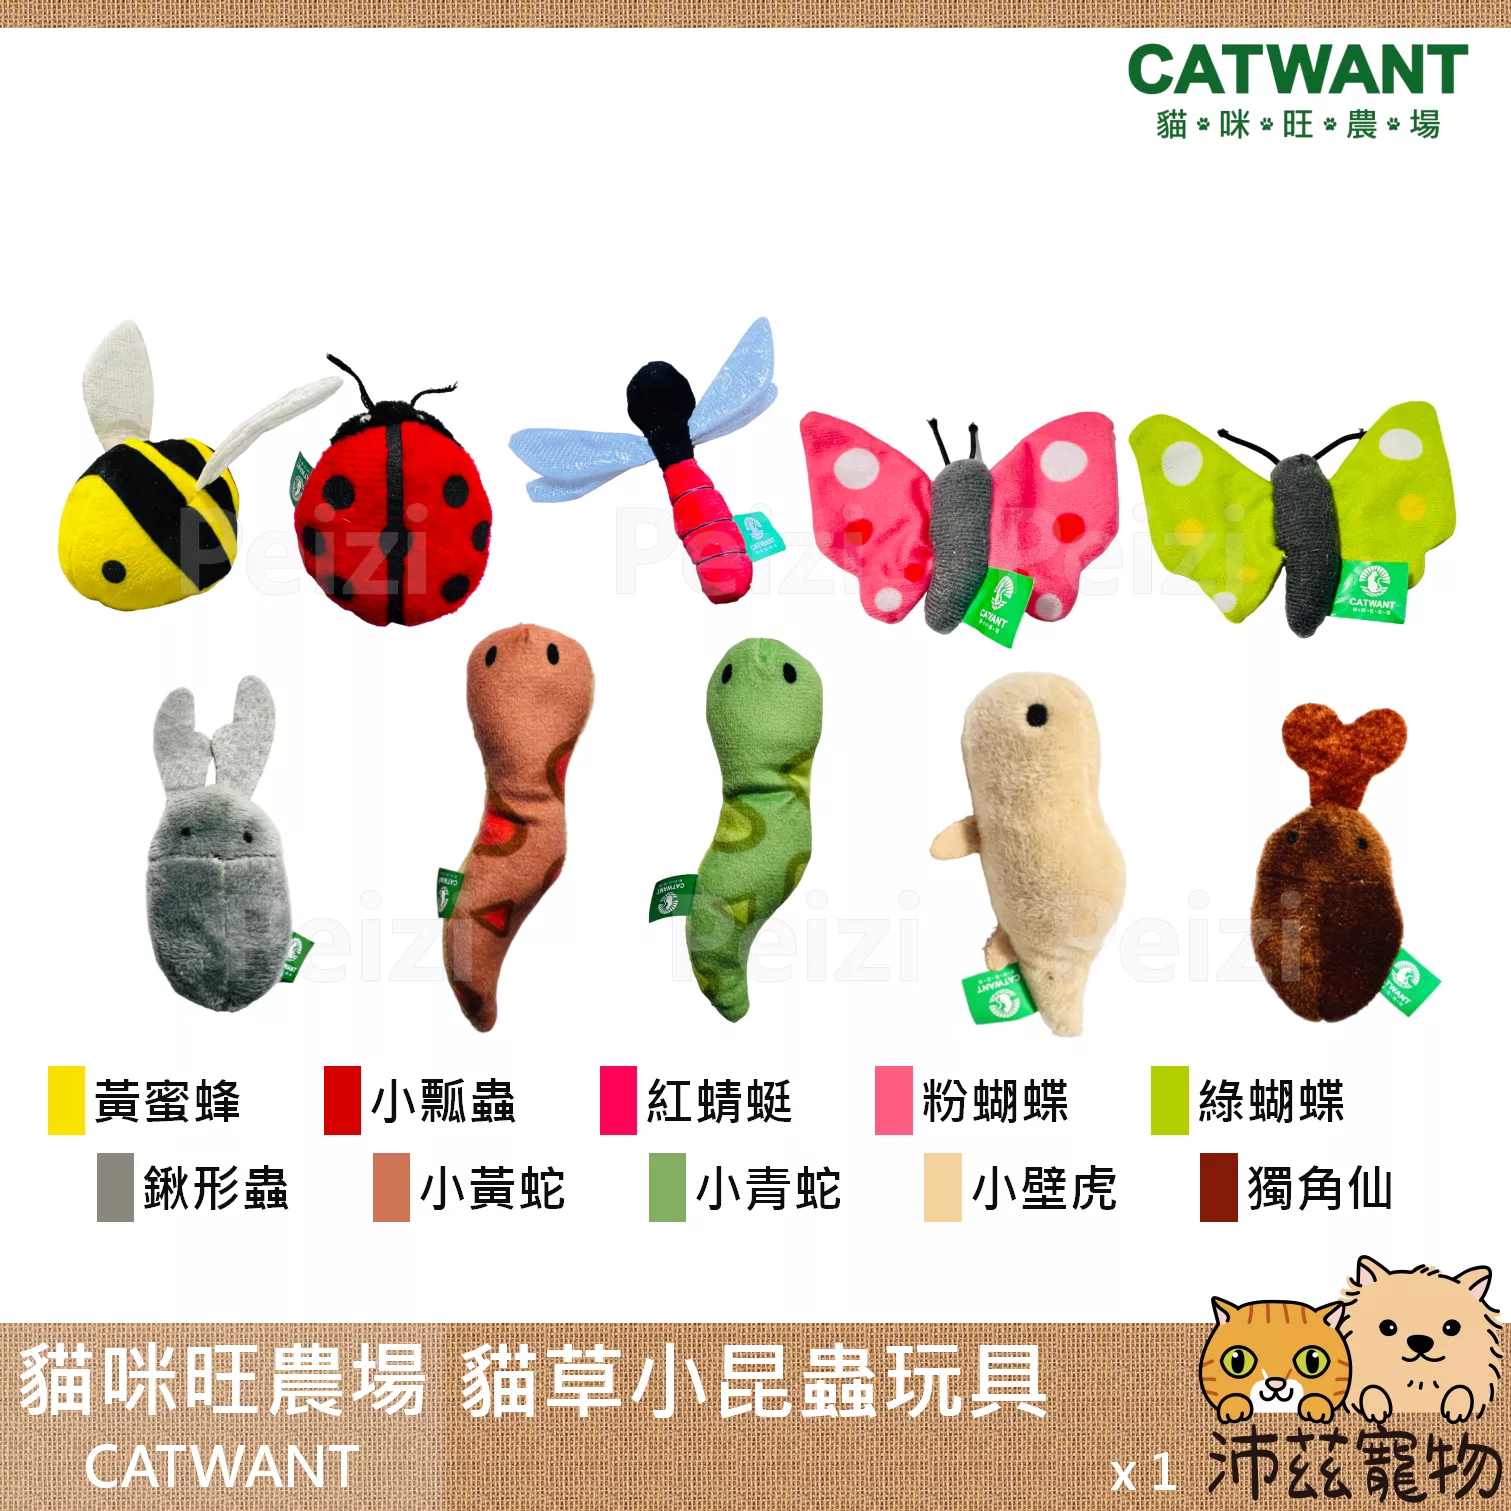 【貓咪旺農場 Catwant 貓草小昆蟲玩具】貓薄荷 木天蓼 台灣 貓玩具 貓 玩具